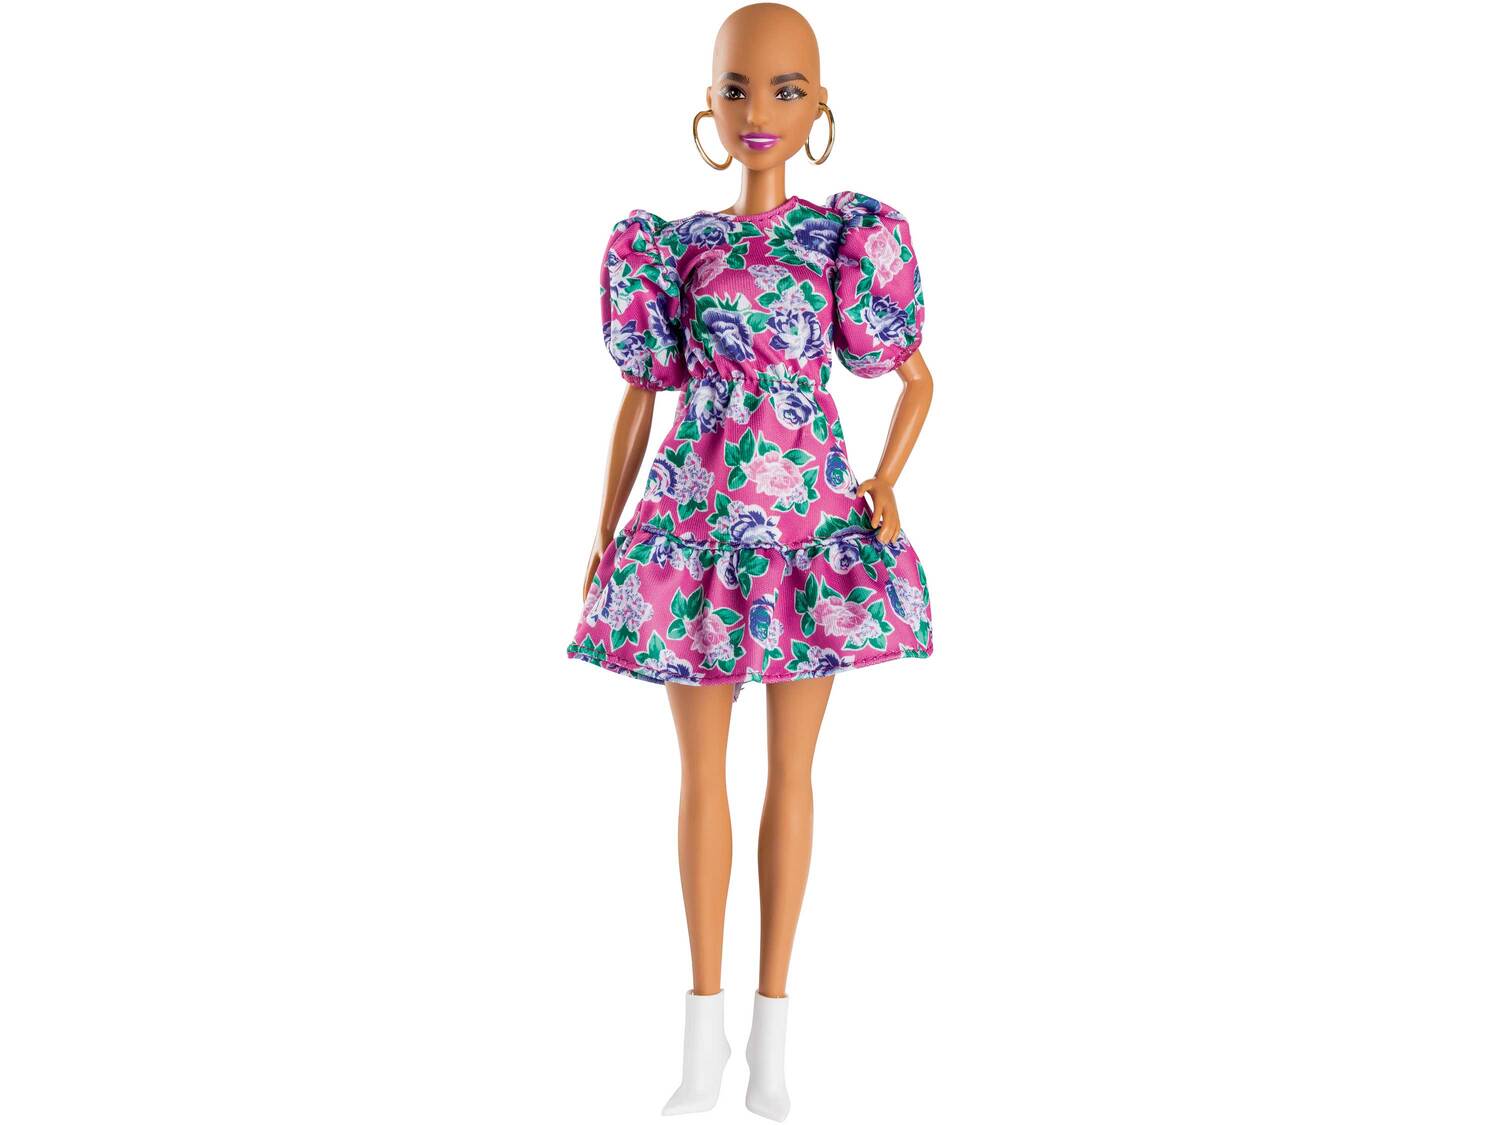 Barbie ou Ken Fashionistas , le prix 9.99 € 
- Chaque poupée arbore un LOOK ...